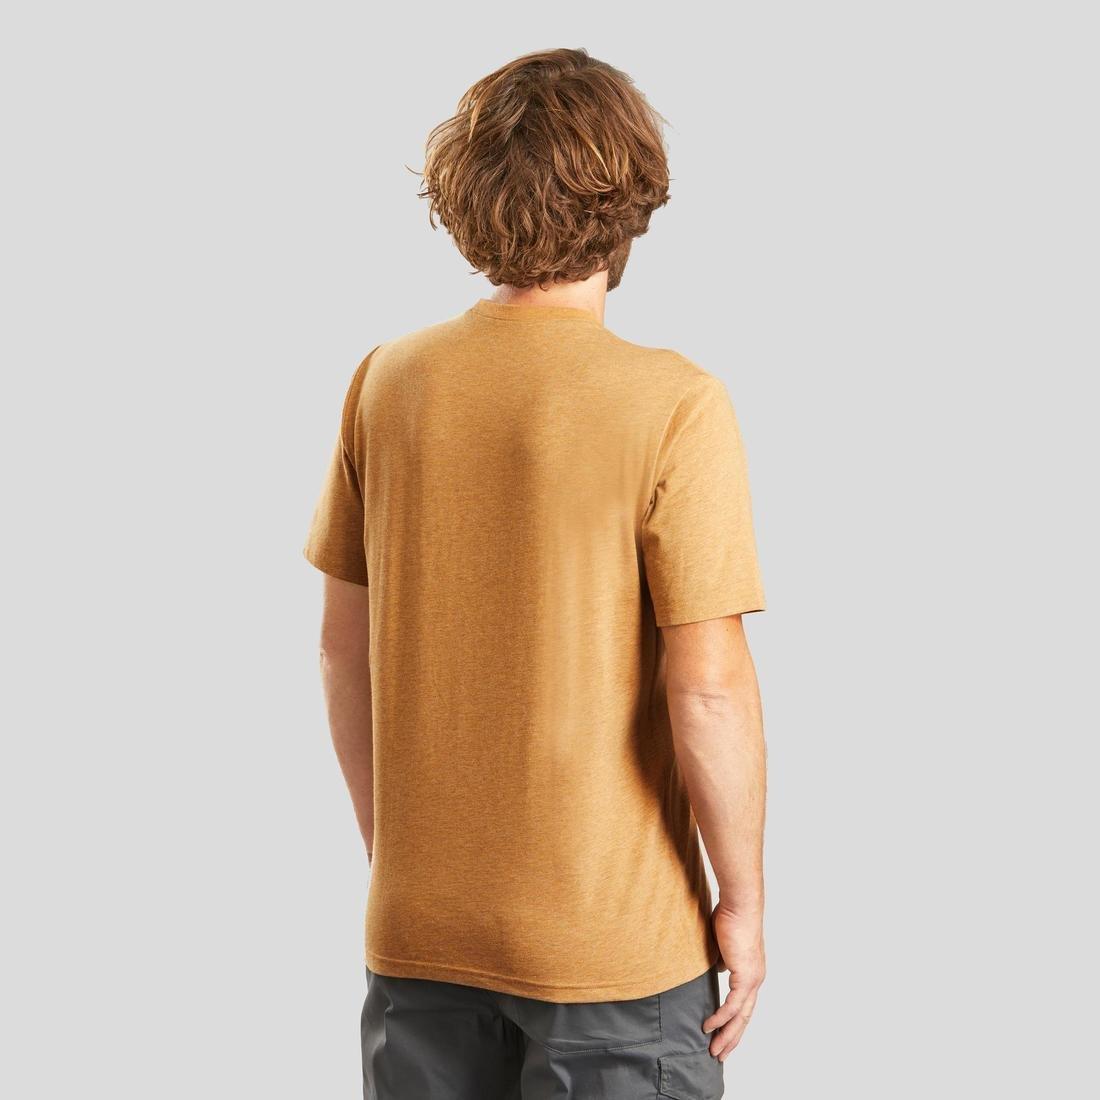 QUECHUA - Techtil 100 Short-Sleeved Hiking T-Shirt - Mottled, Hazelnut